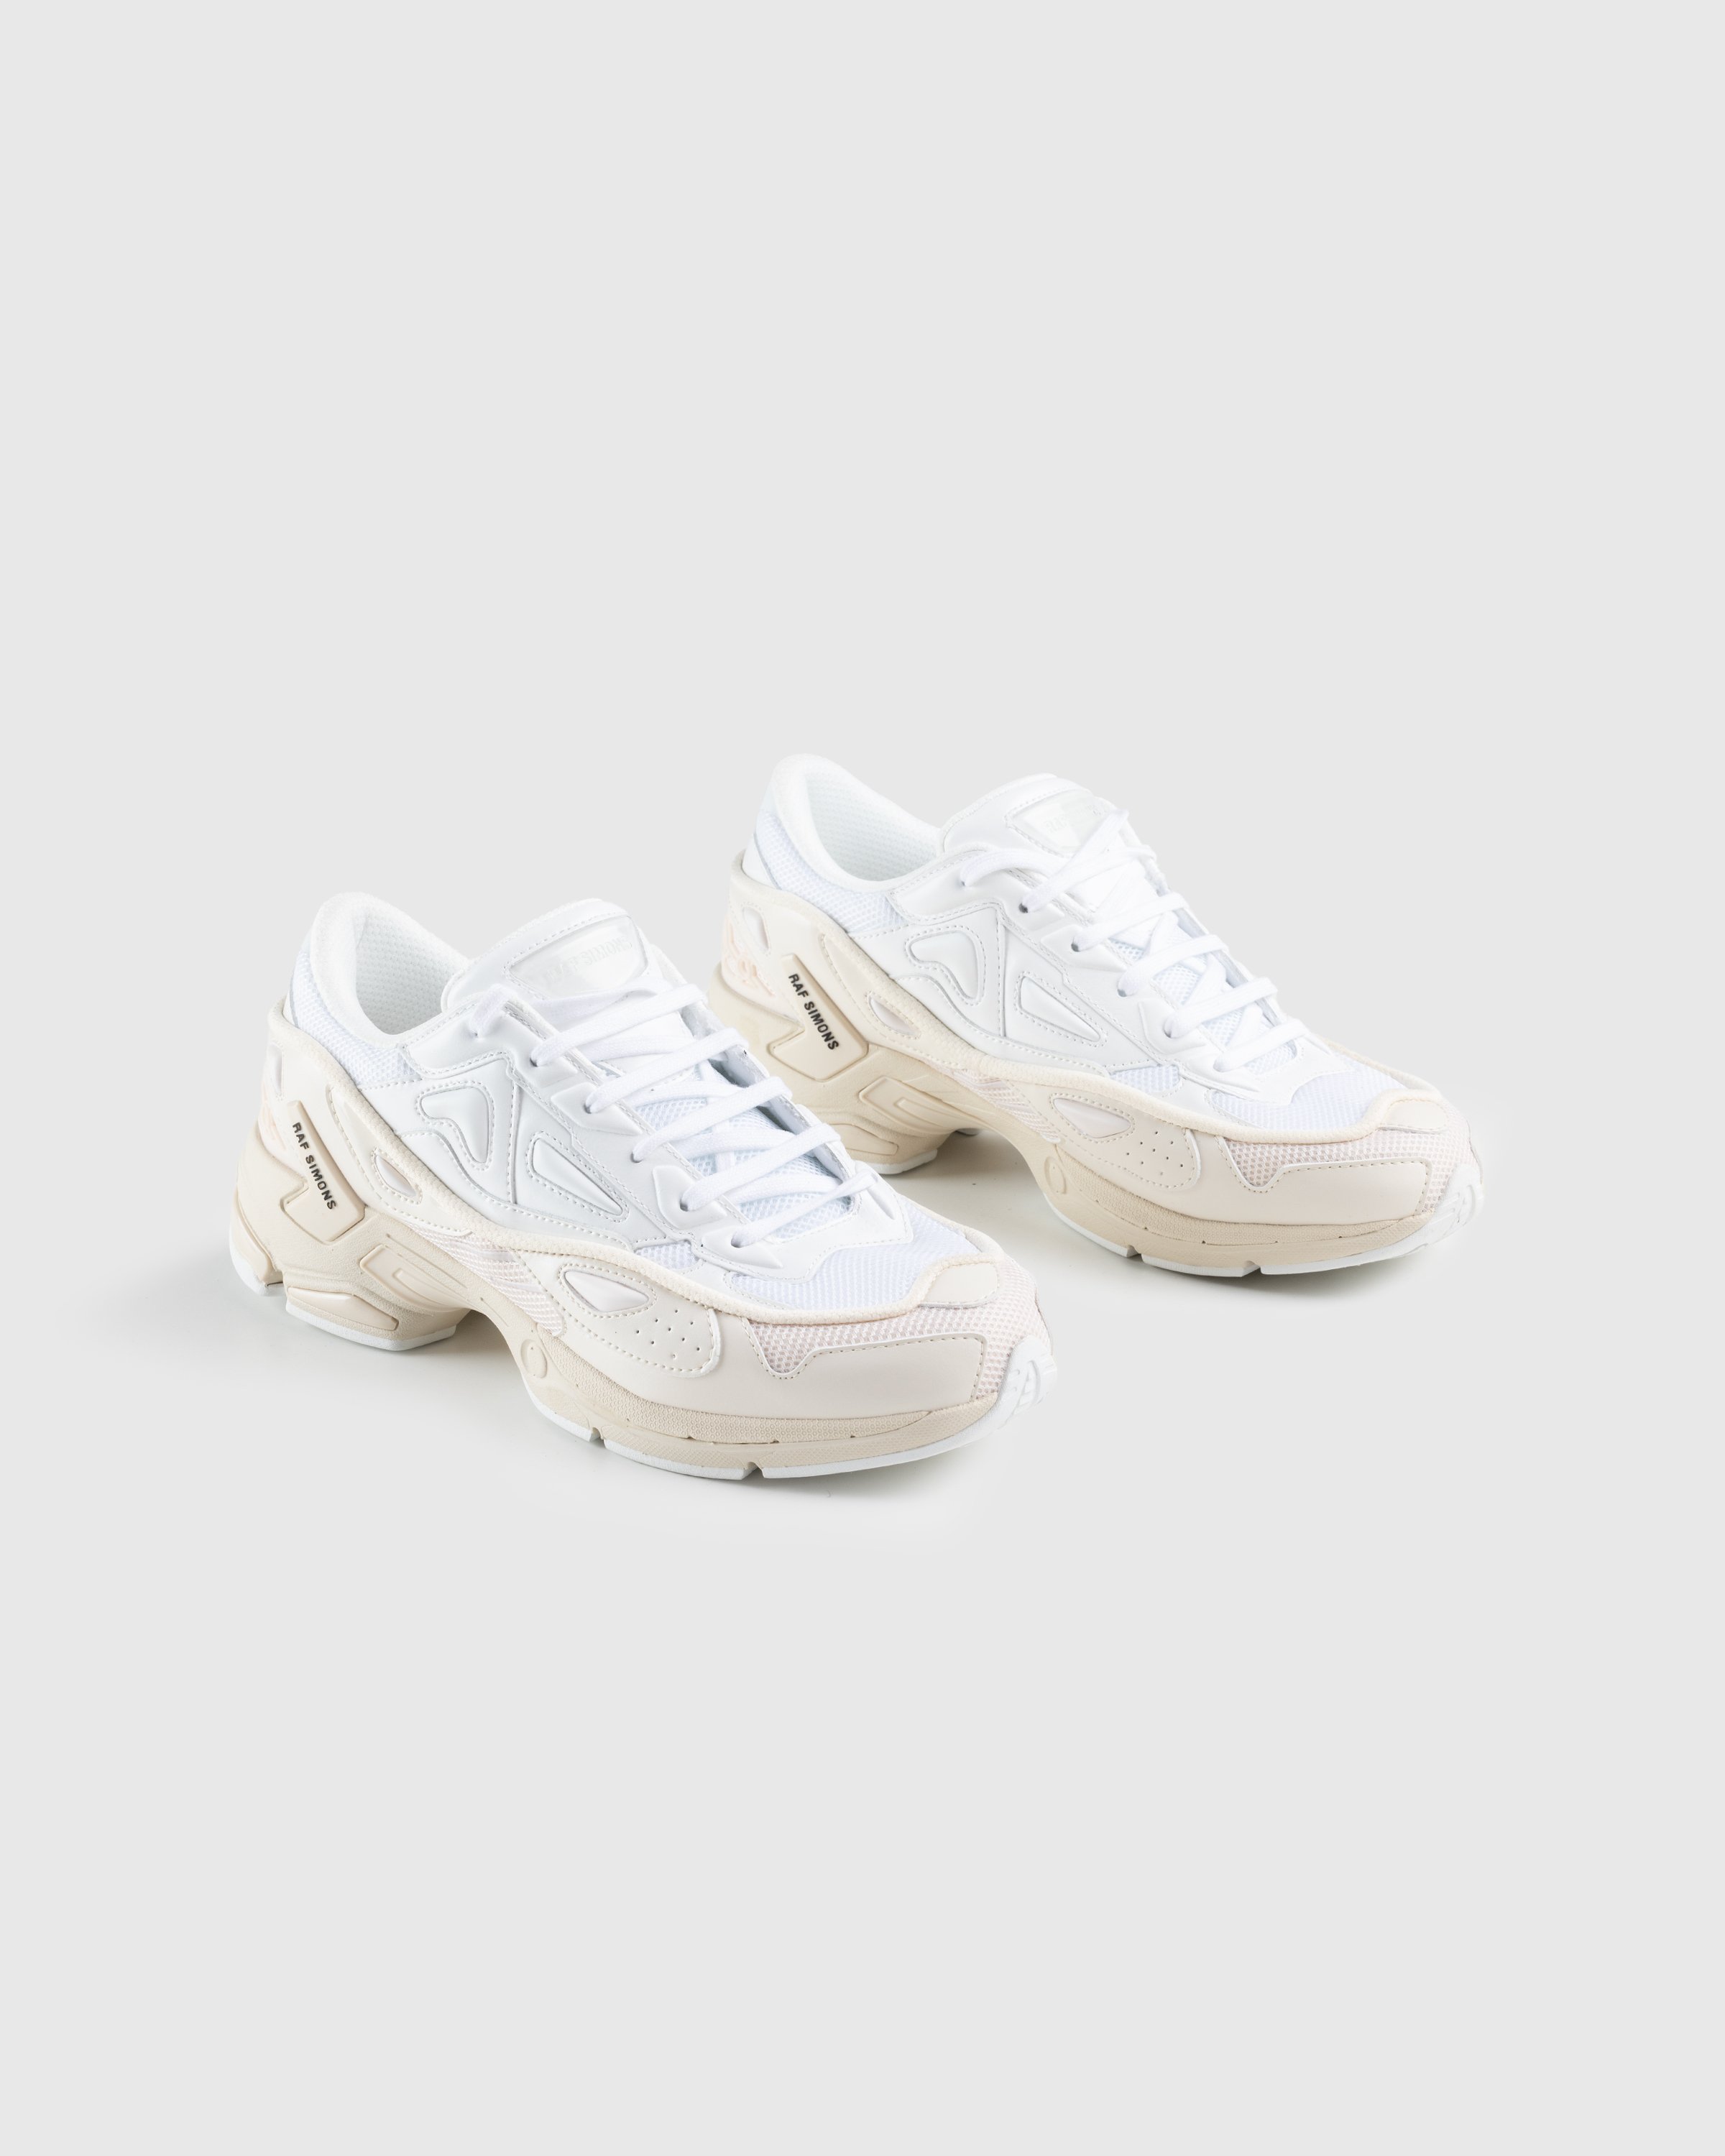 Raf Simons - Pharaxus Sneaker Off White - Footwear - Beige - Image 3